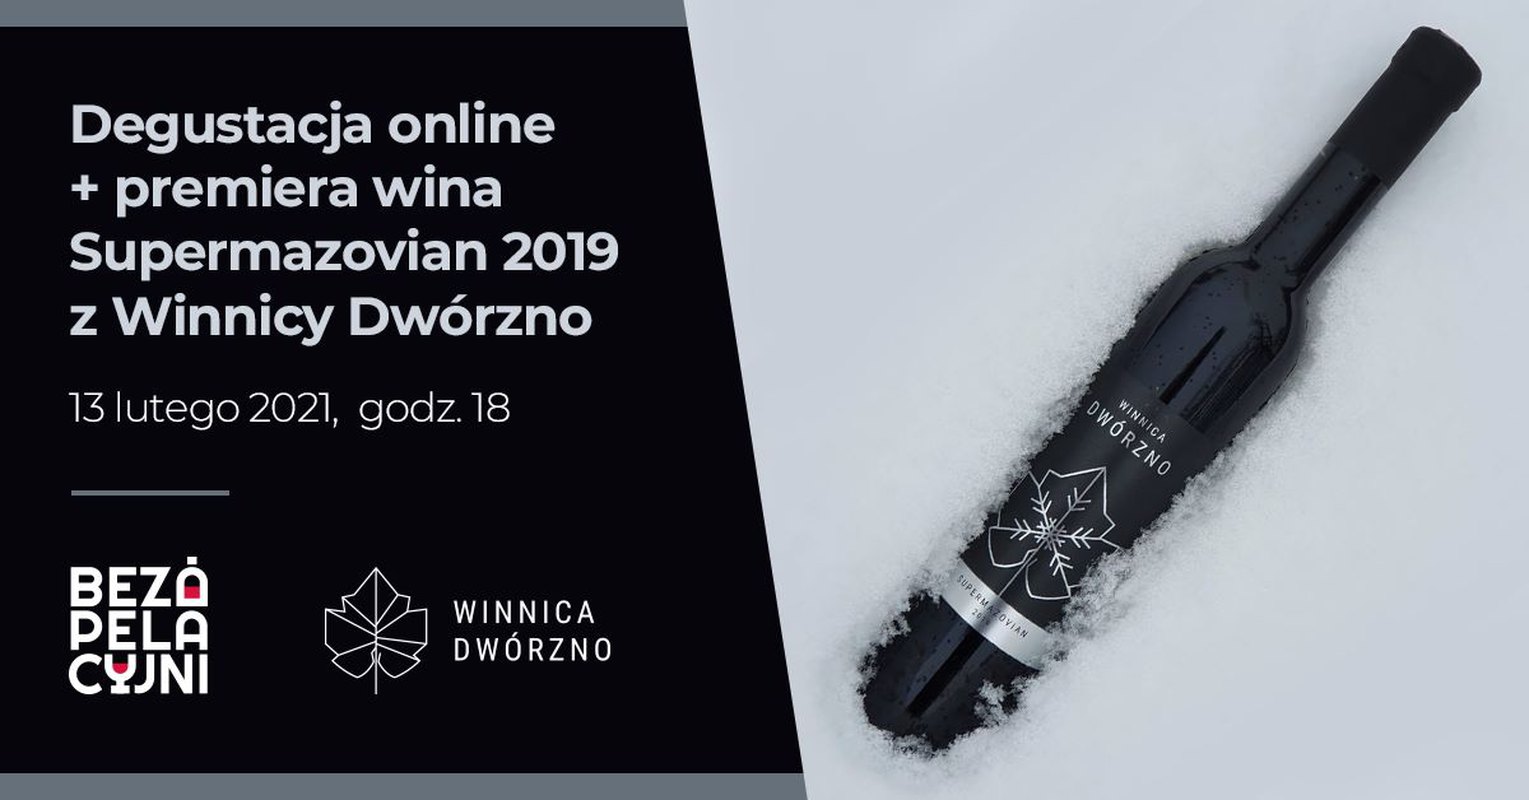 Premiera wina Supermazovian 2019 Winnica Dwórzno + degustacja online